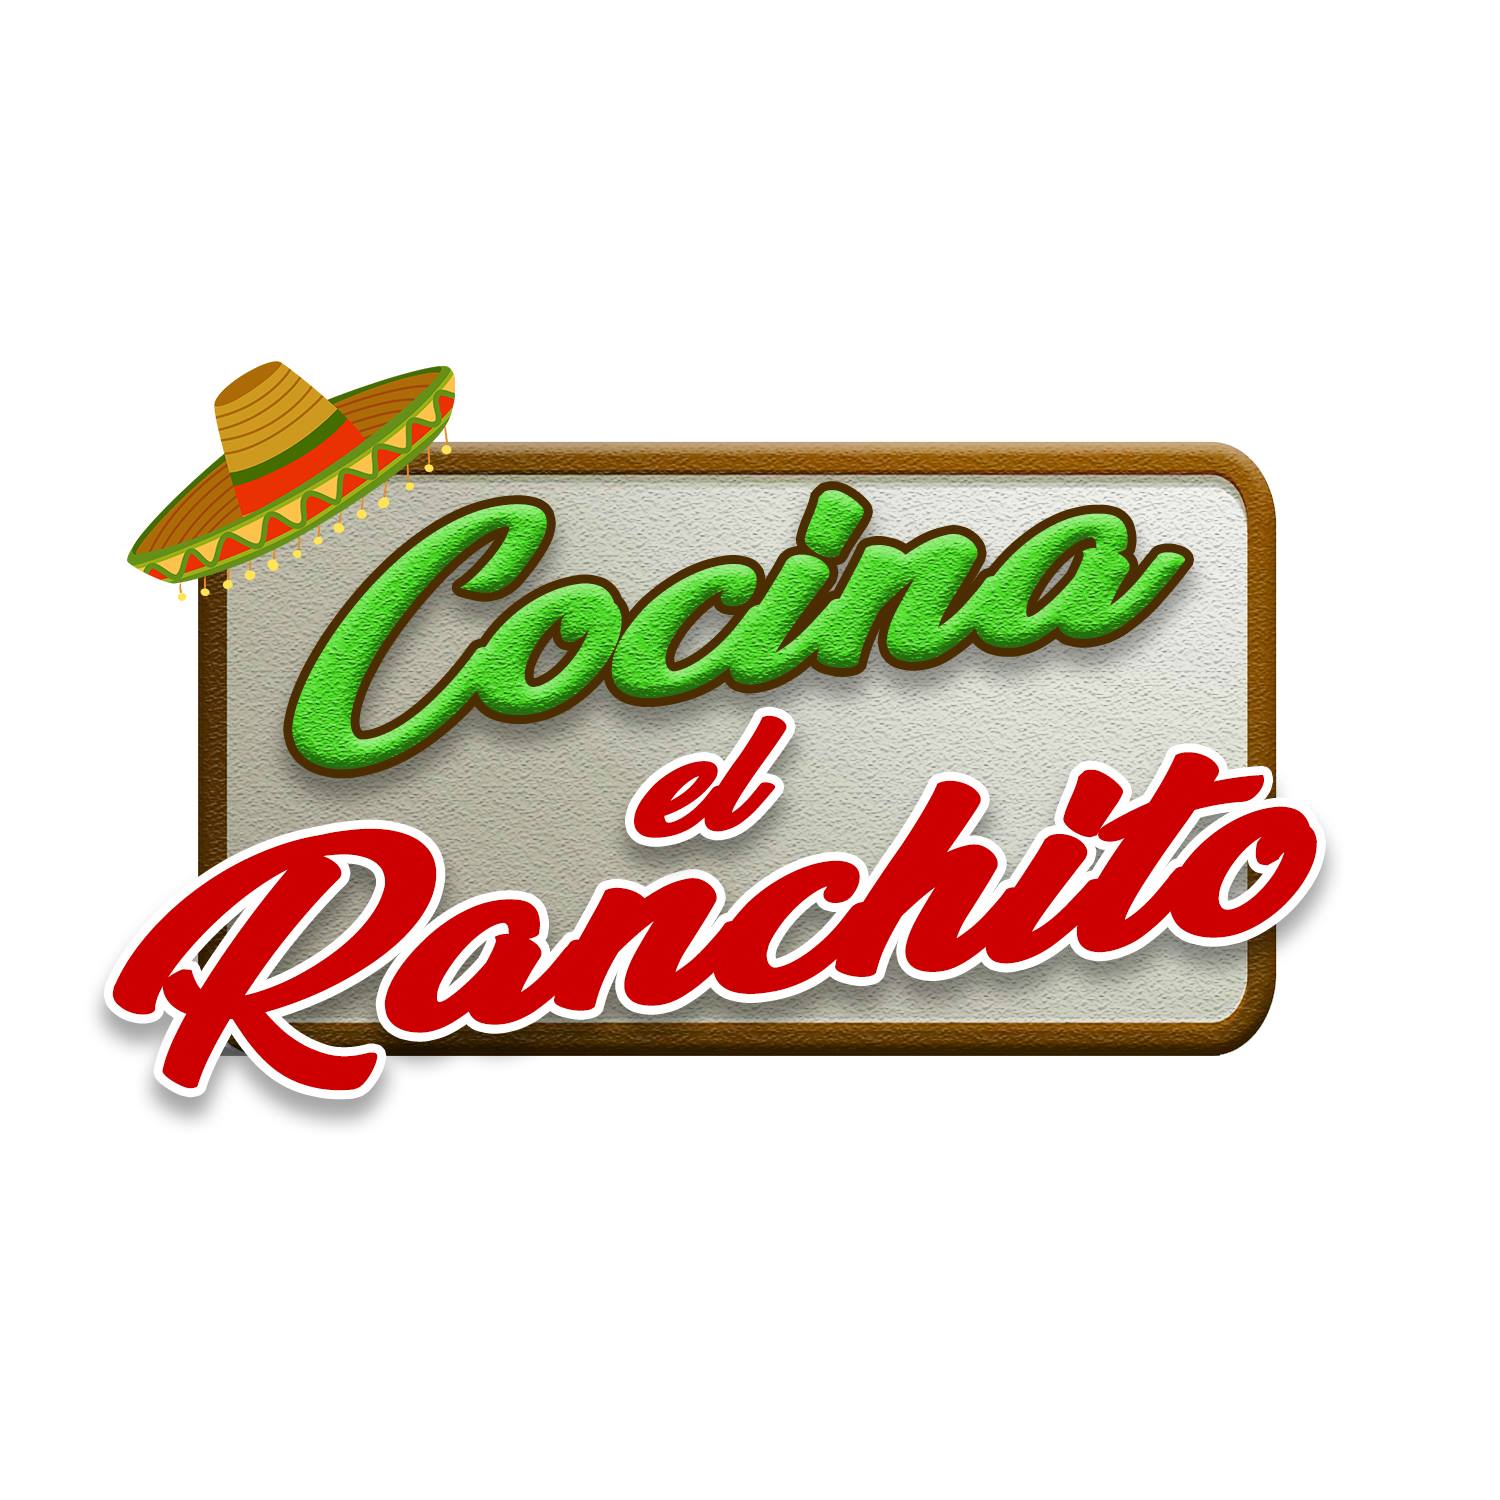 Cocina El Ranchito